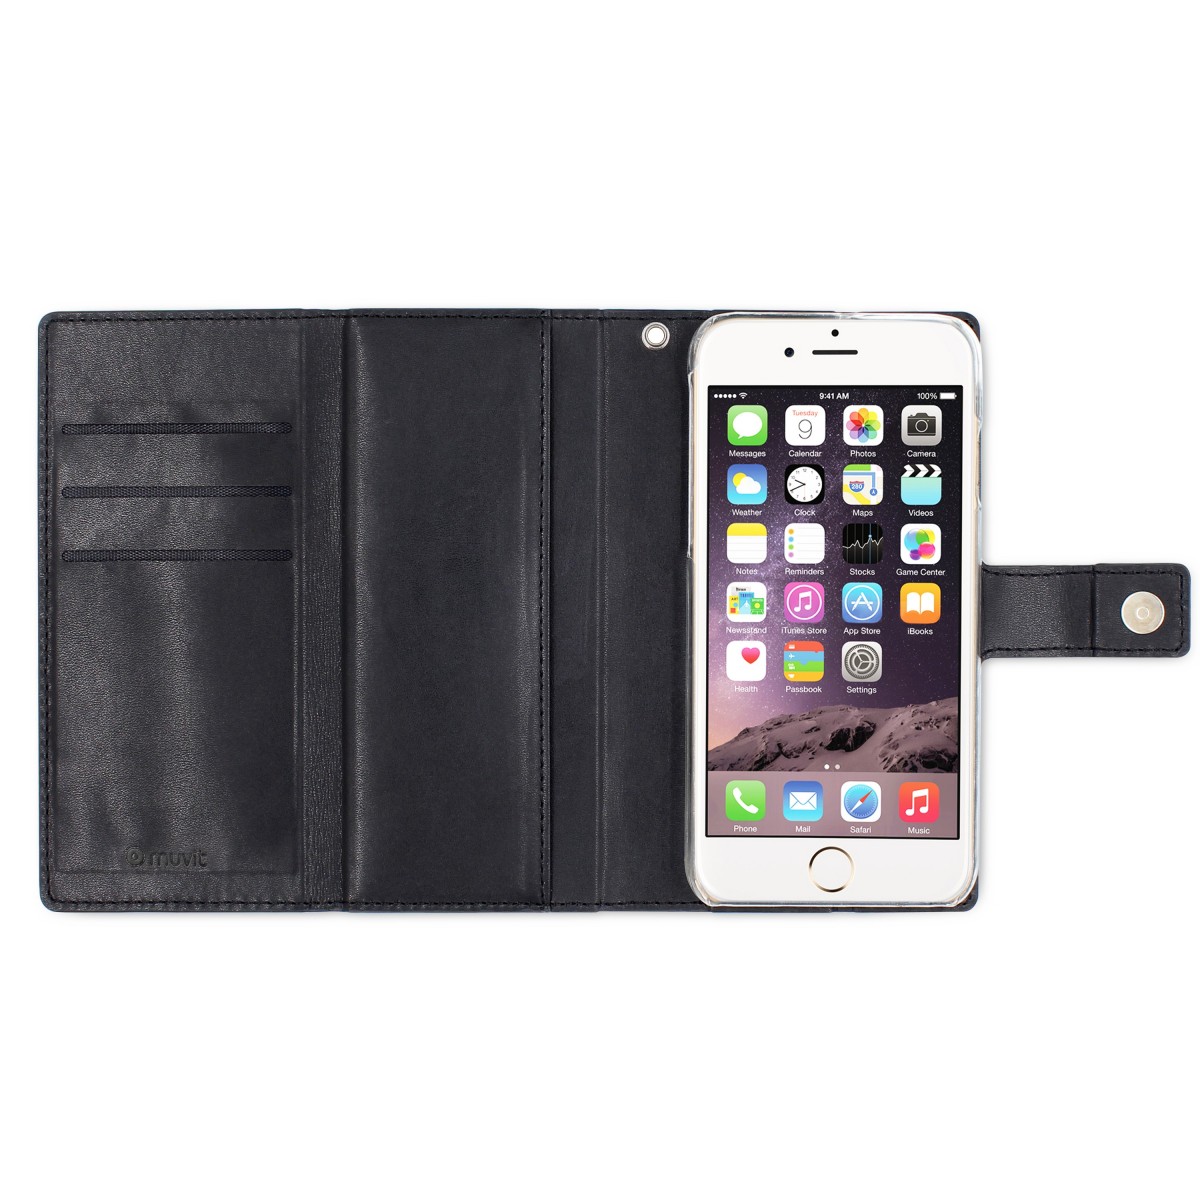 Etui iPhone 7 Porte-cartes Noir et coque aimantée - Muvit